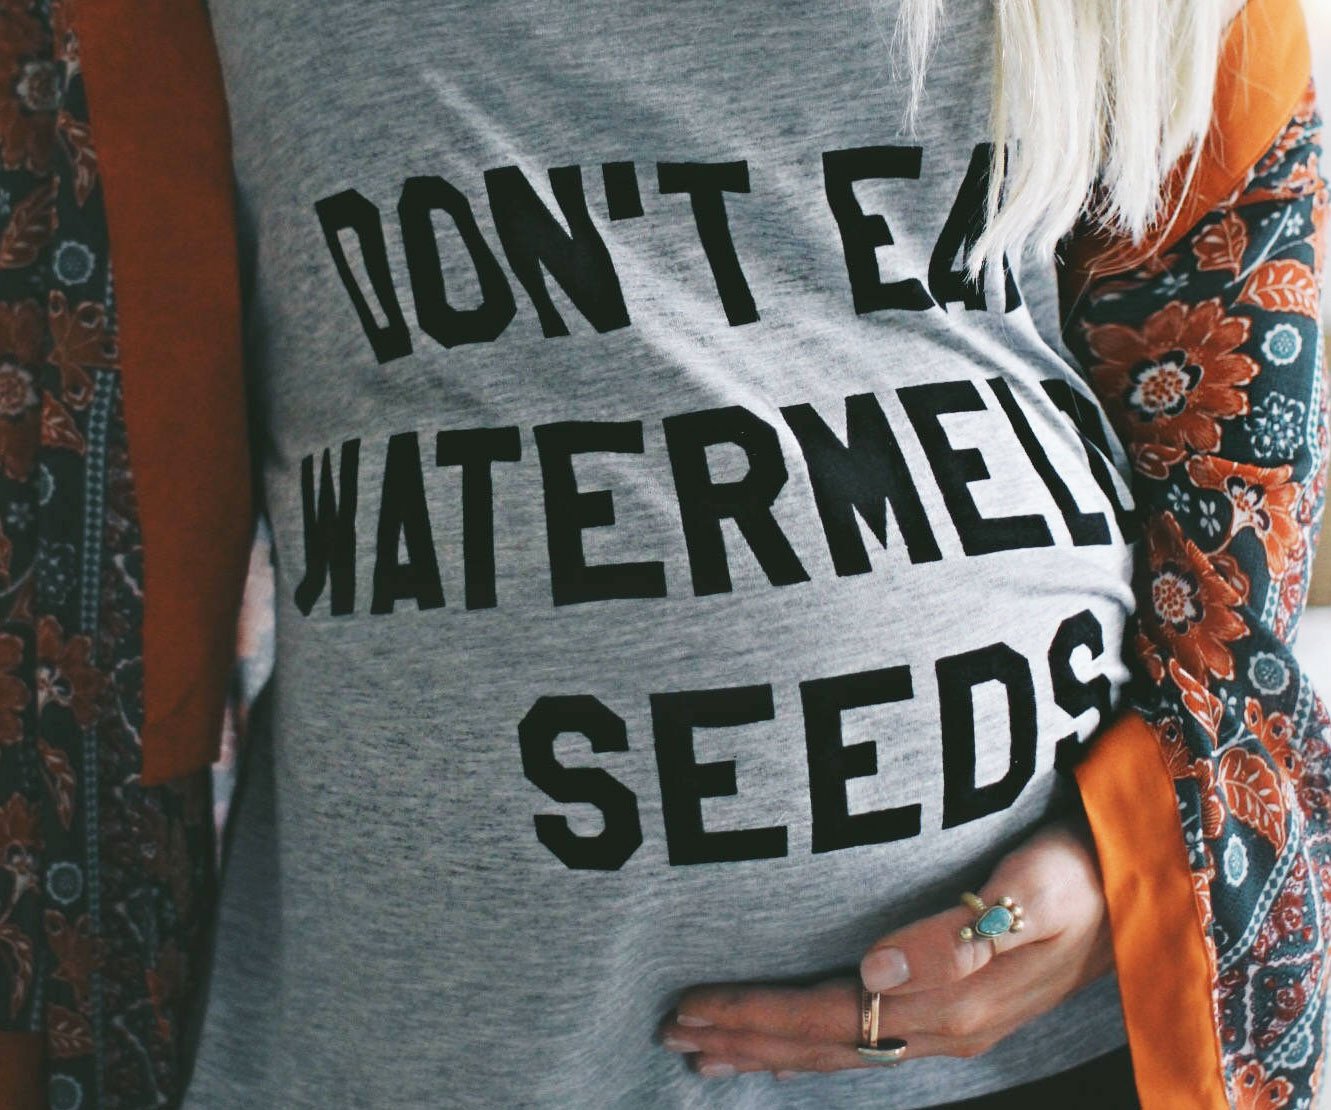 Don’t Eat Watermelon Seeds Shirt